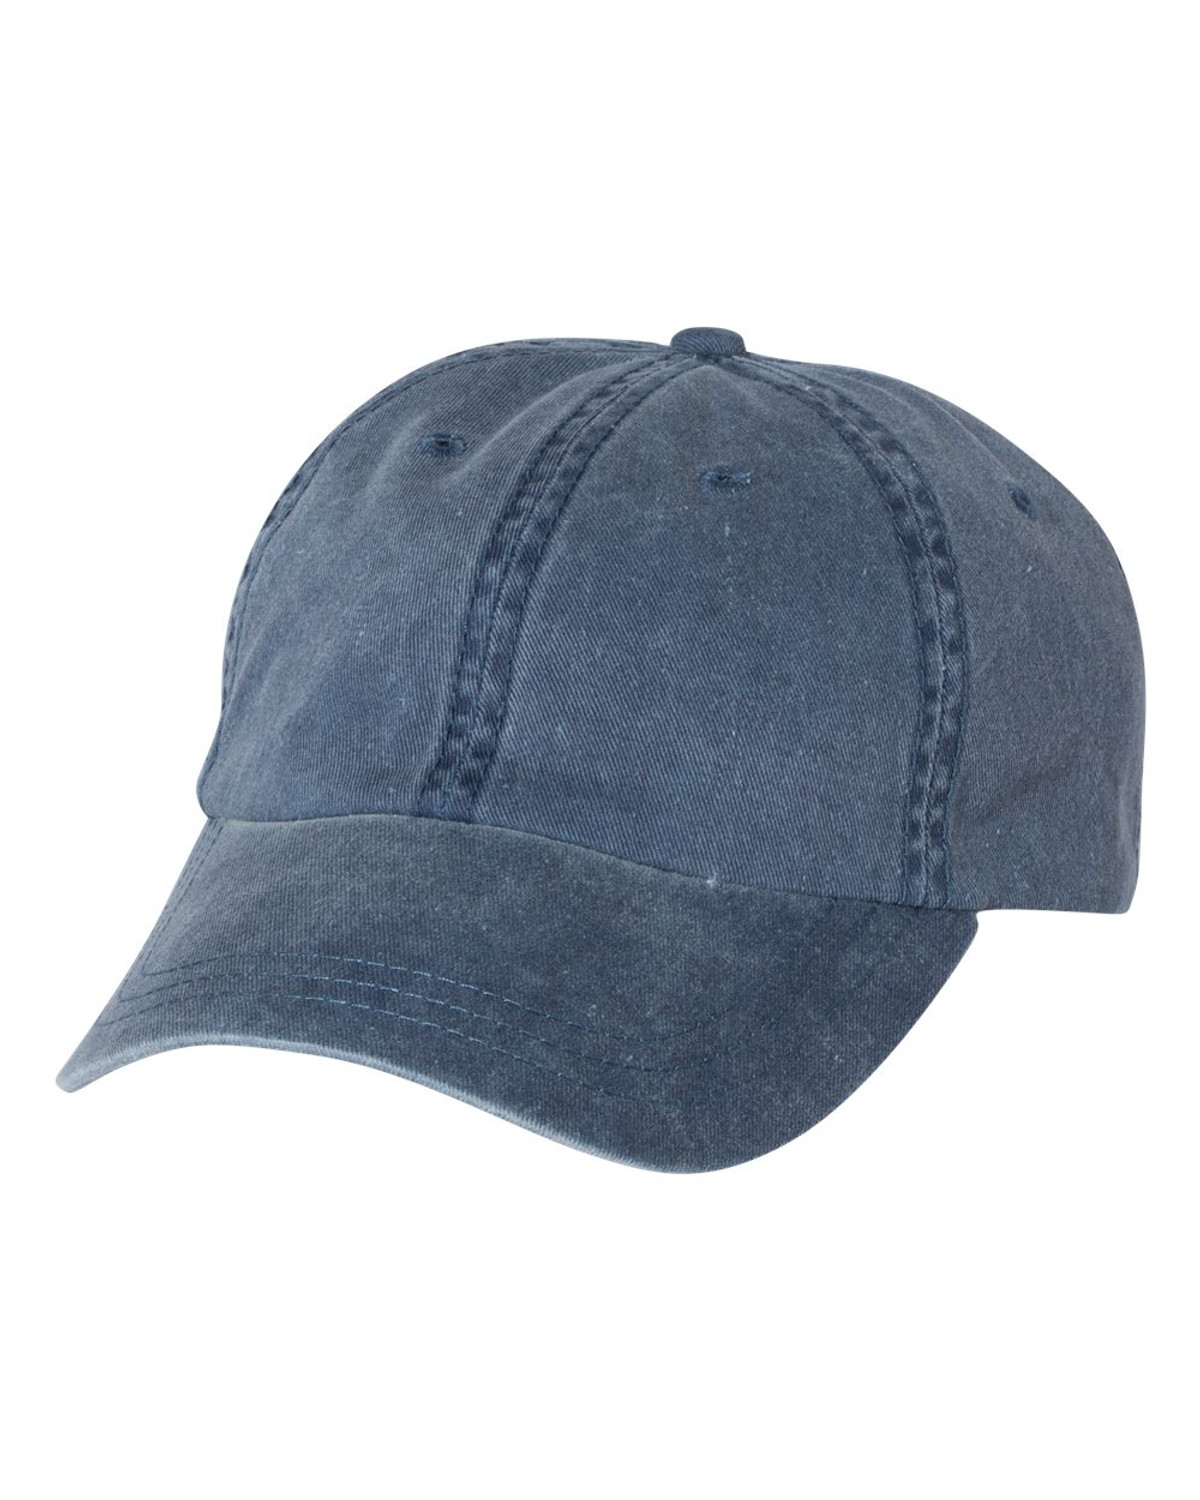 24 Wholesale Cap Men Women Plain Dad Hats Low Profile Black Denim